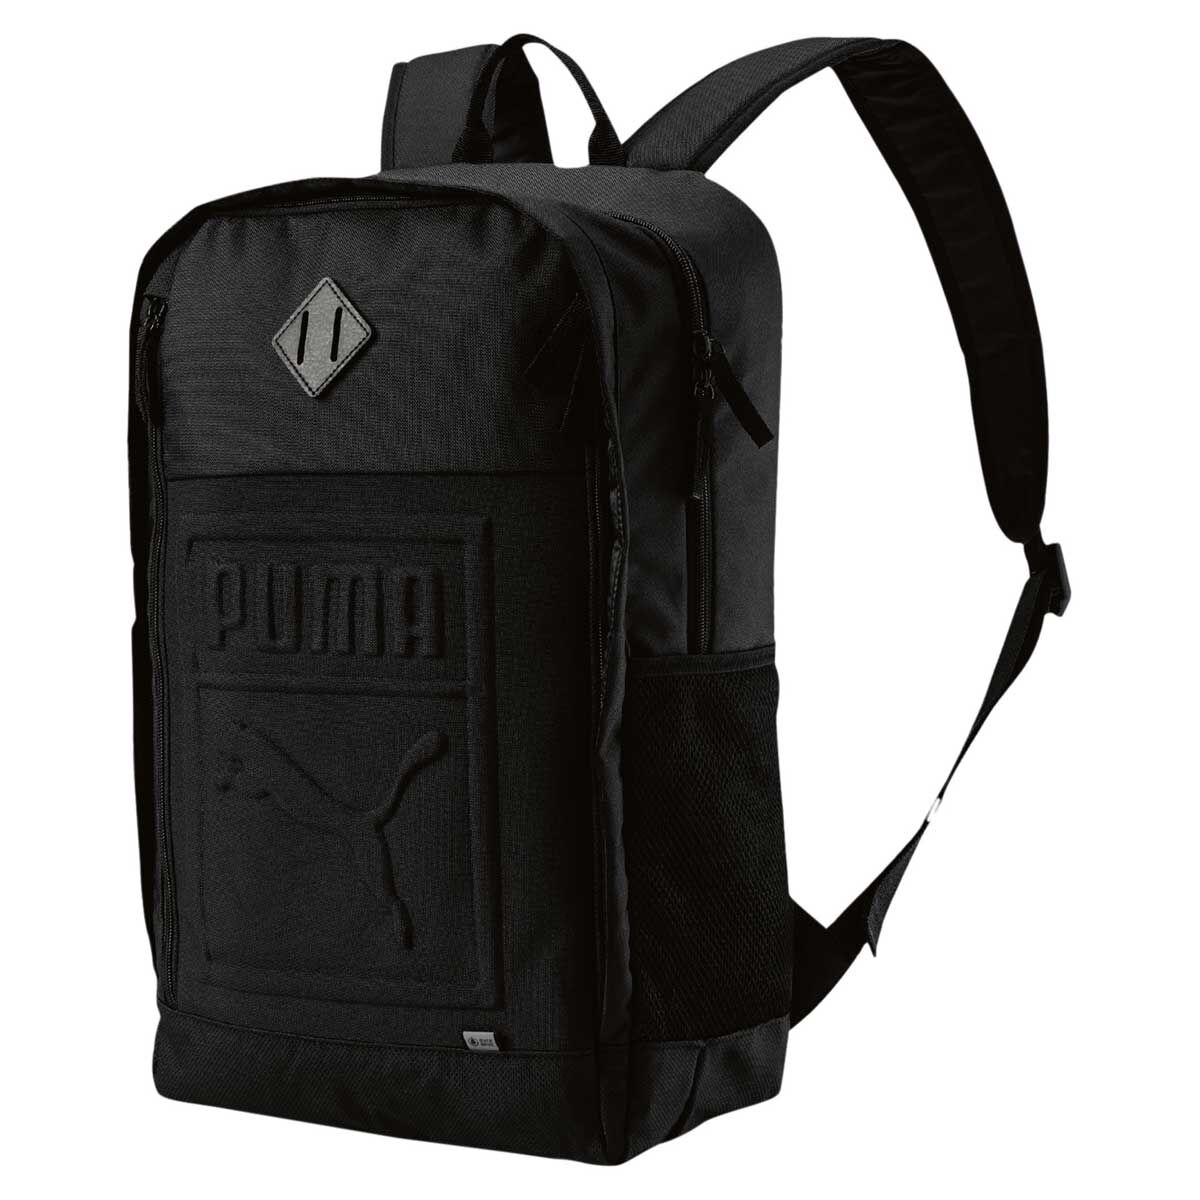 puma s backpack